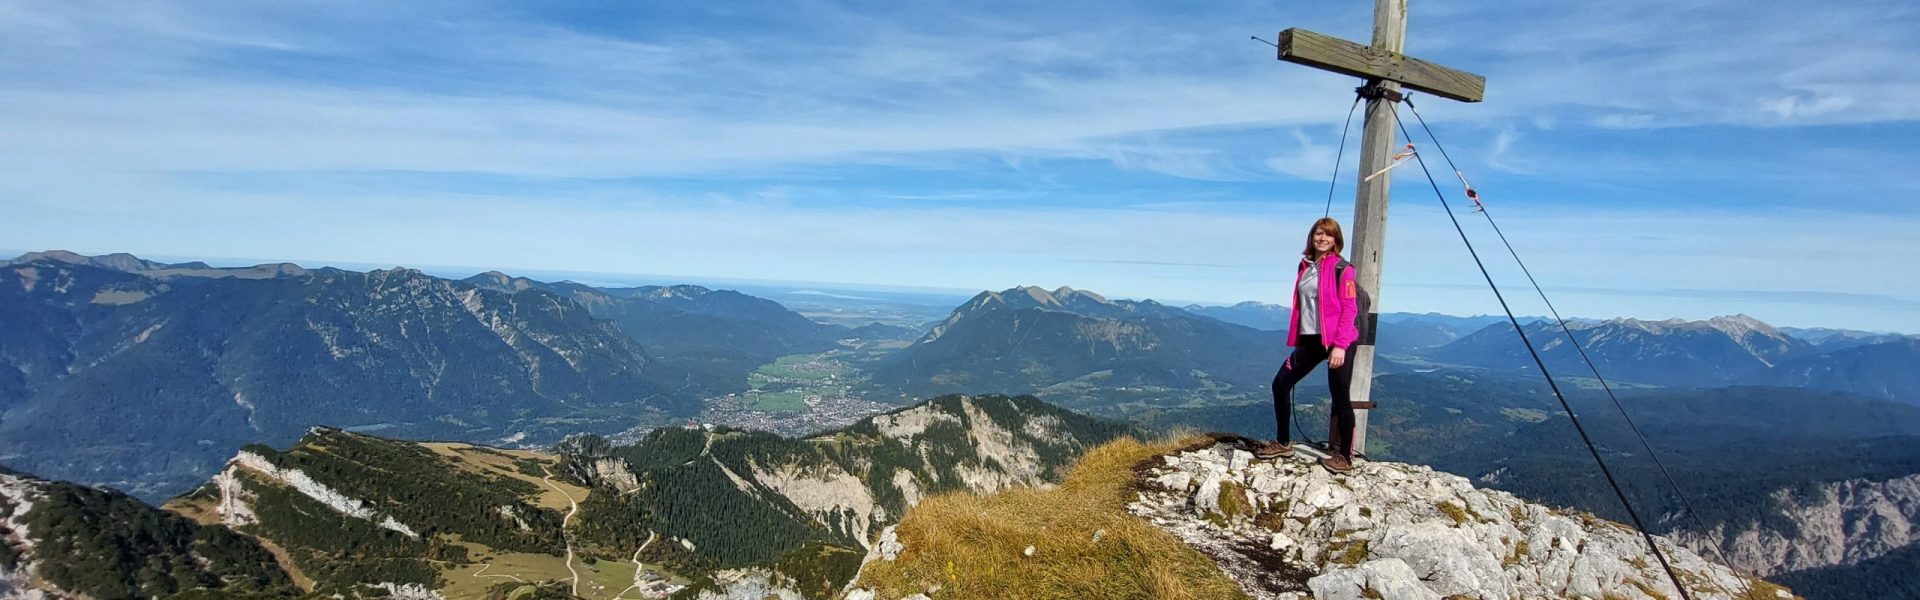 Christina Weichwald am Gipfelkreuz mit Blick über die Berge ins Tal